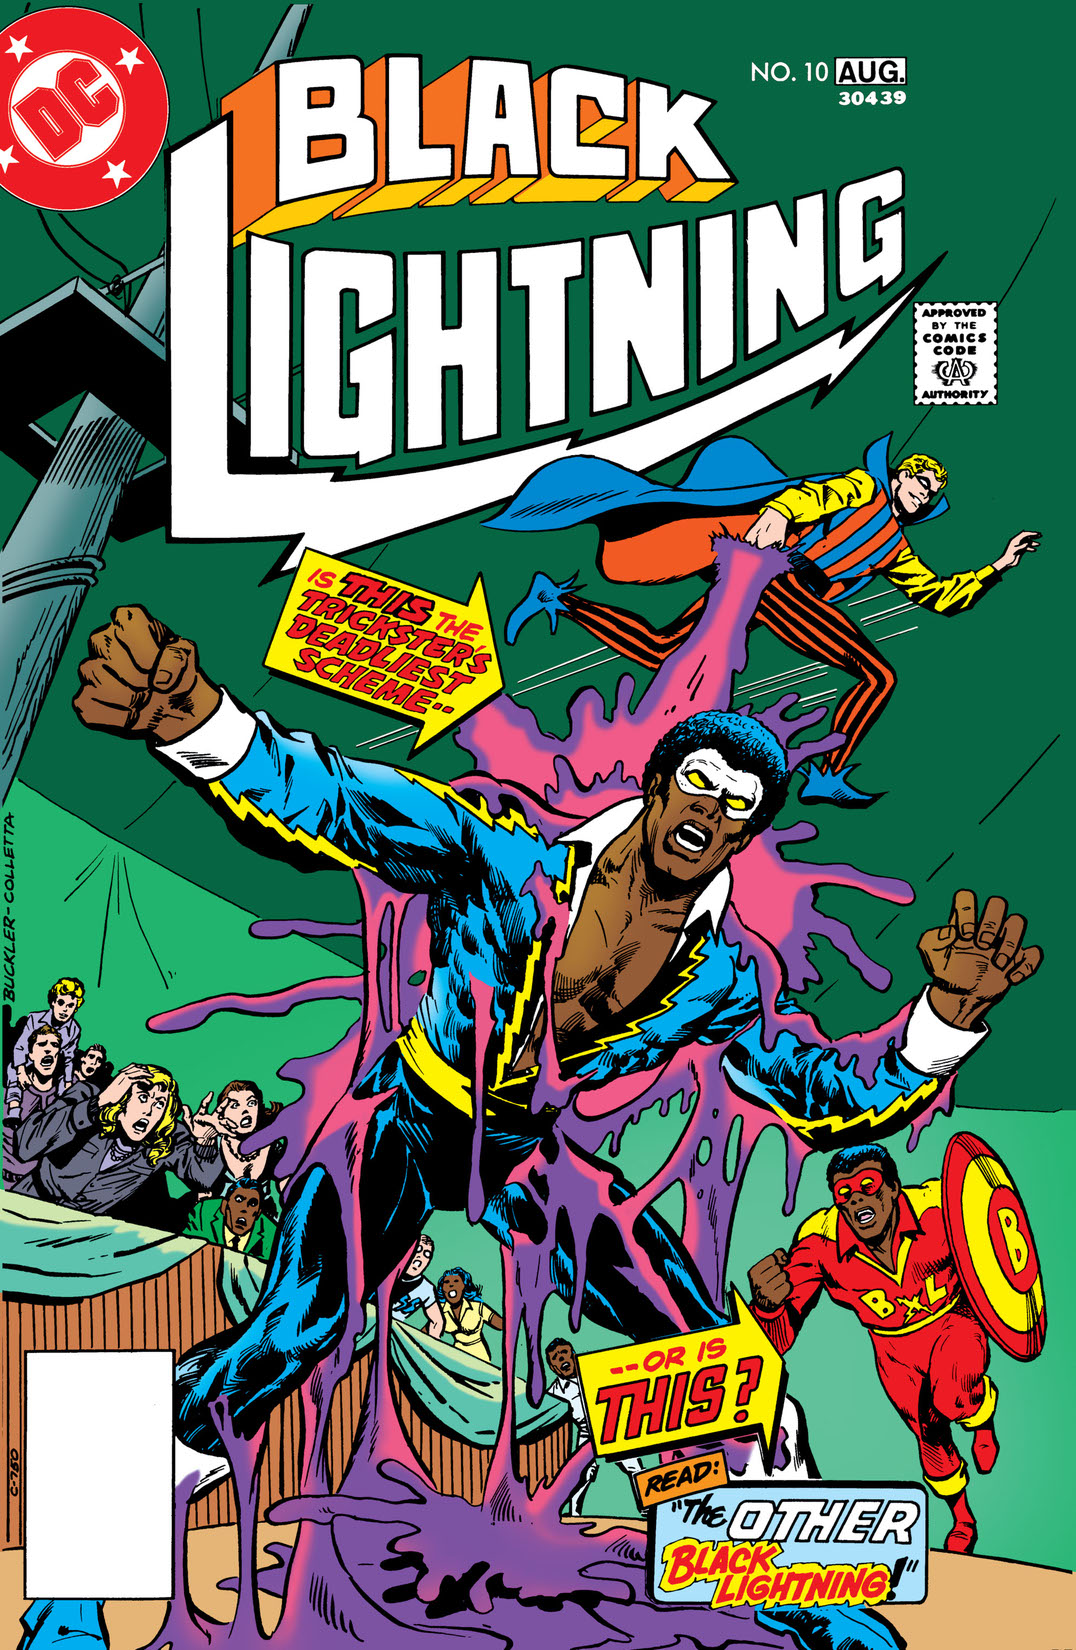 Black Lightning (1977-) #10 preview images